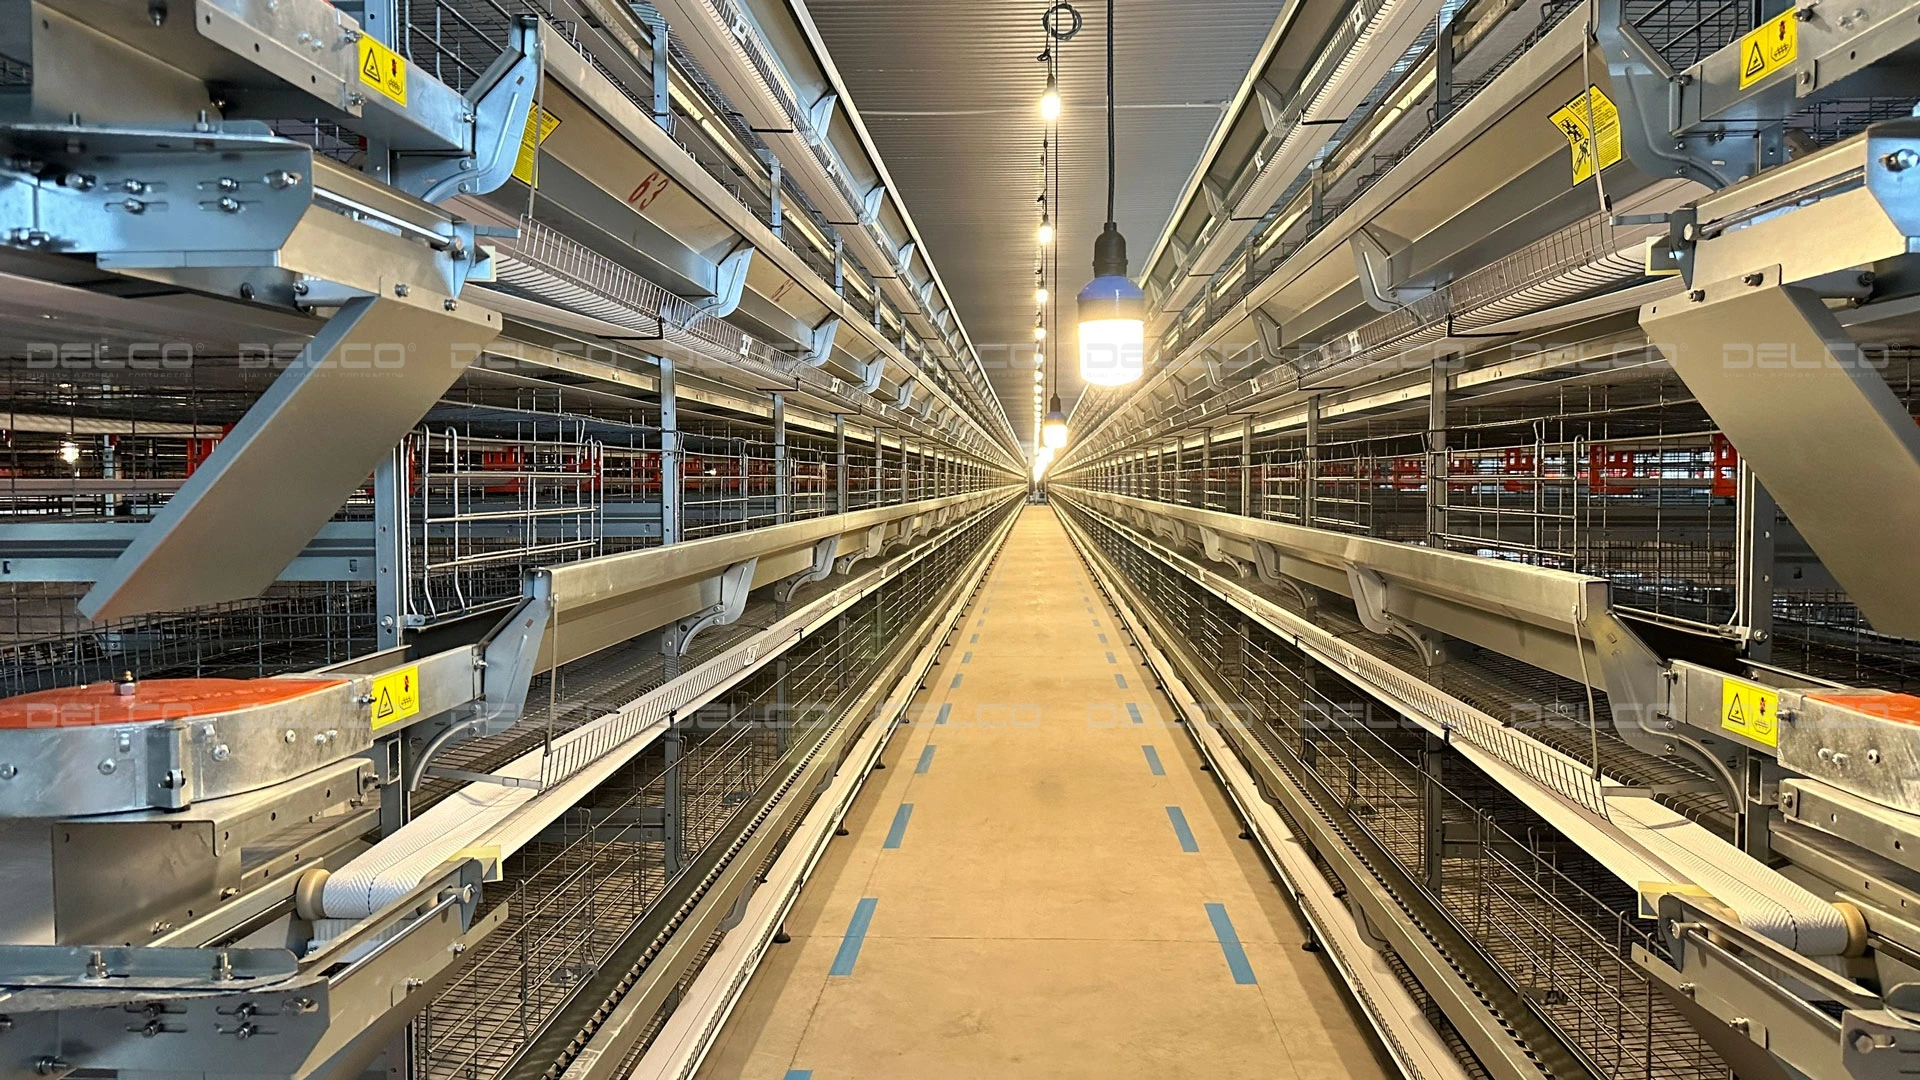 โครงการขยายฟาร์มเทคโนโลยีขั้นสูงของ DELCO – โรงเลี้ยงไก่ 3